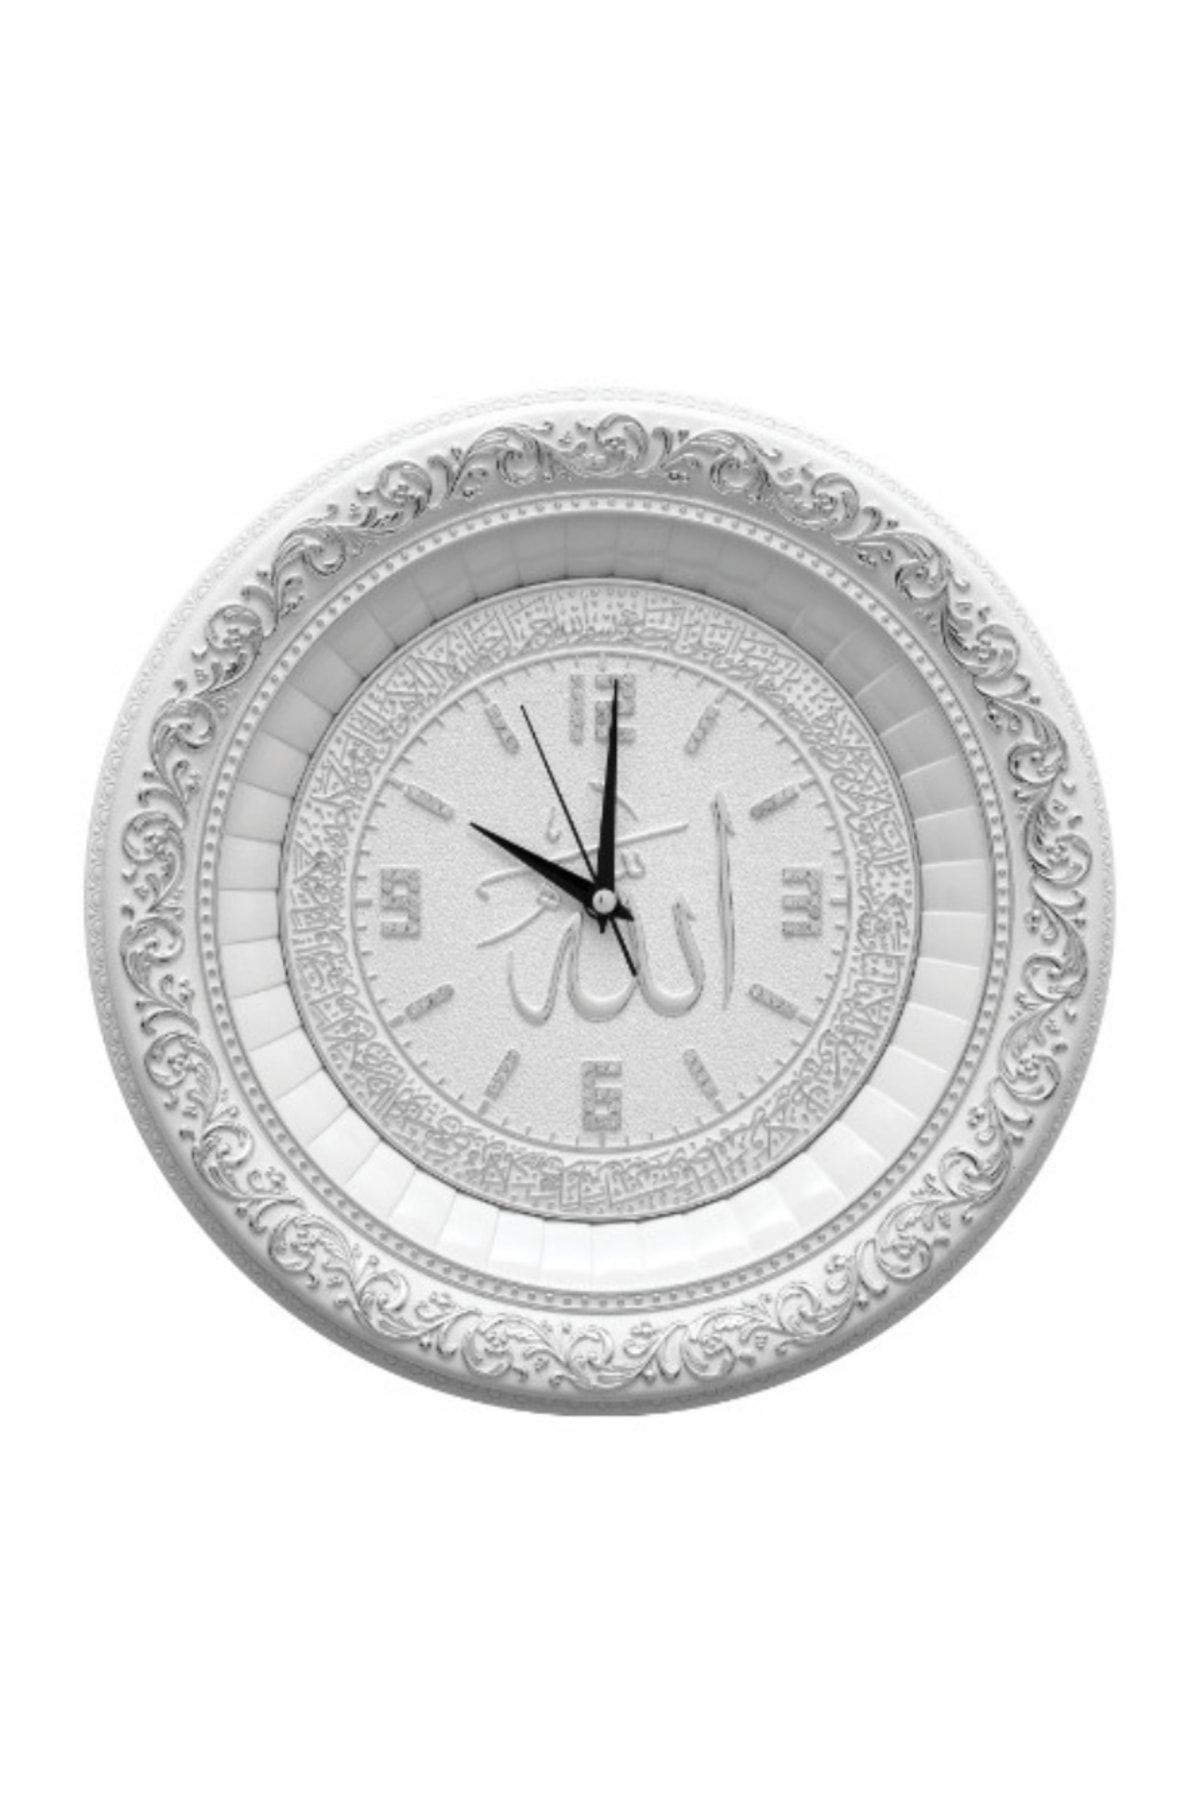 GÜNEŞ HEDİYELİK 44x44 Cm - Saat - Ismi Celil Ayet-el Kürsi - Beyaz Gümüş